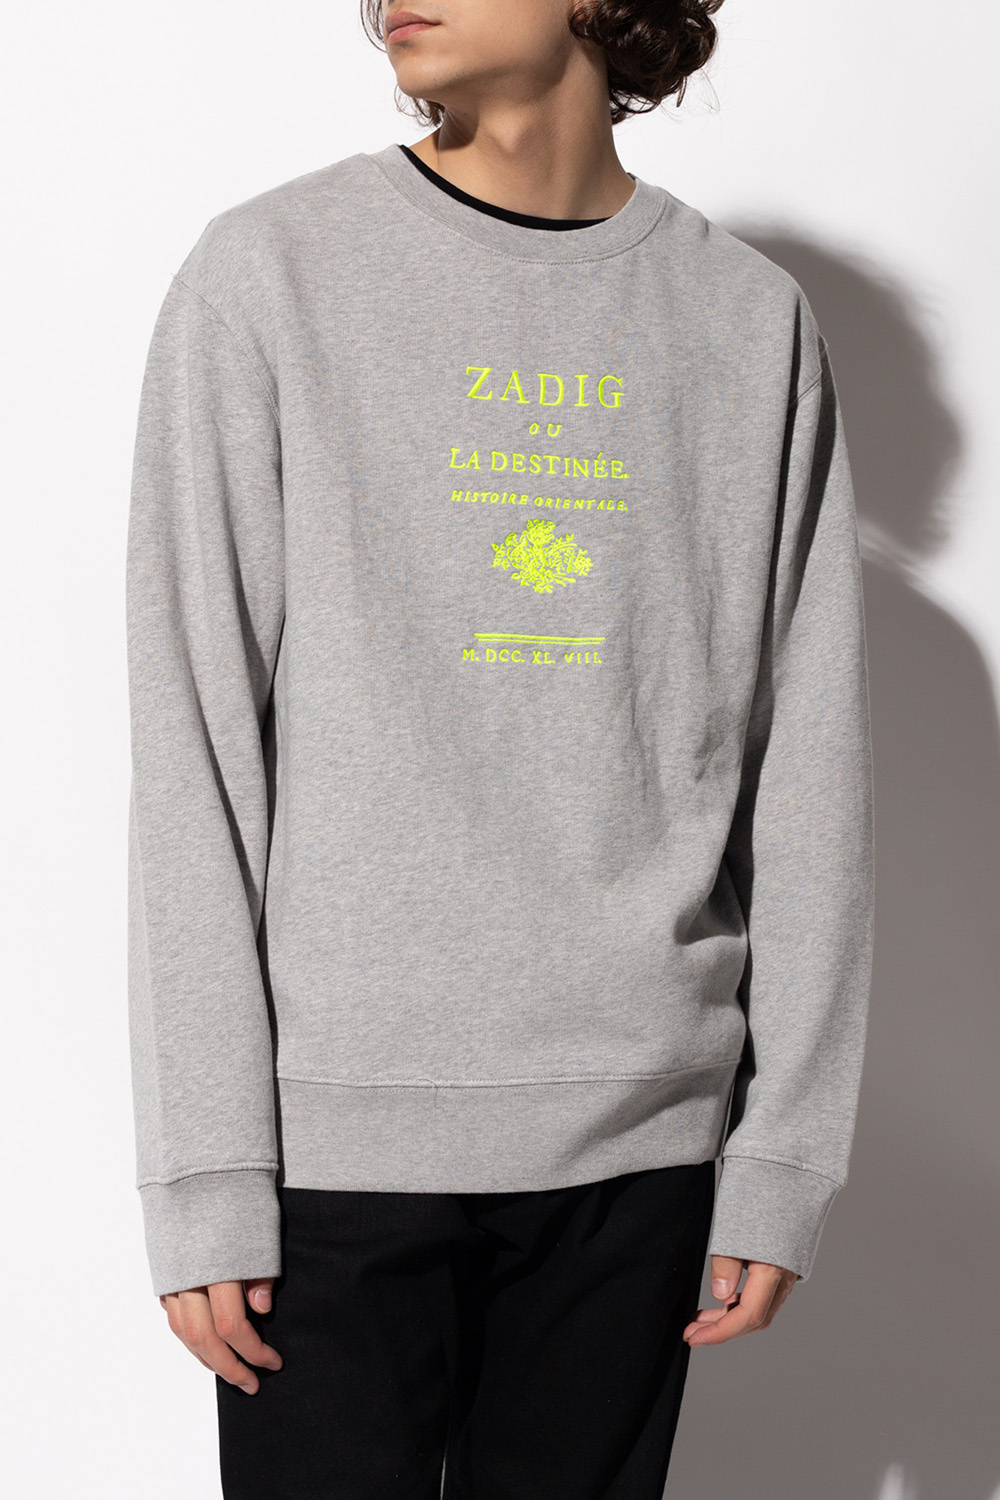 Zadig & Voltaire Embroidered sweatshirt